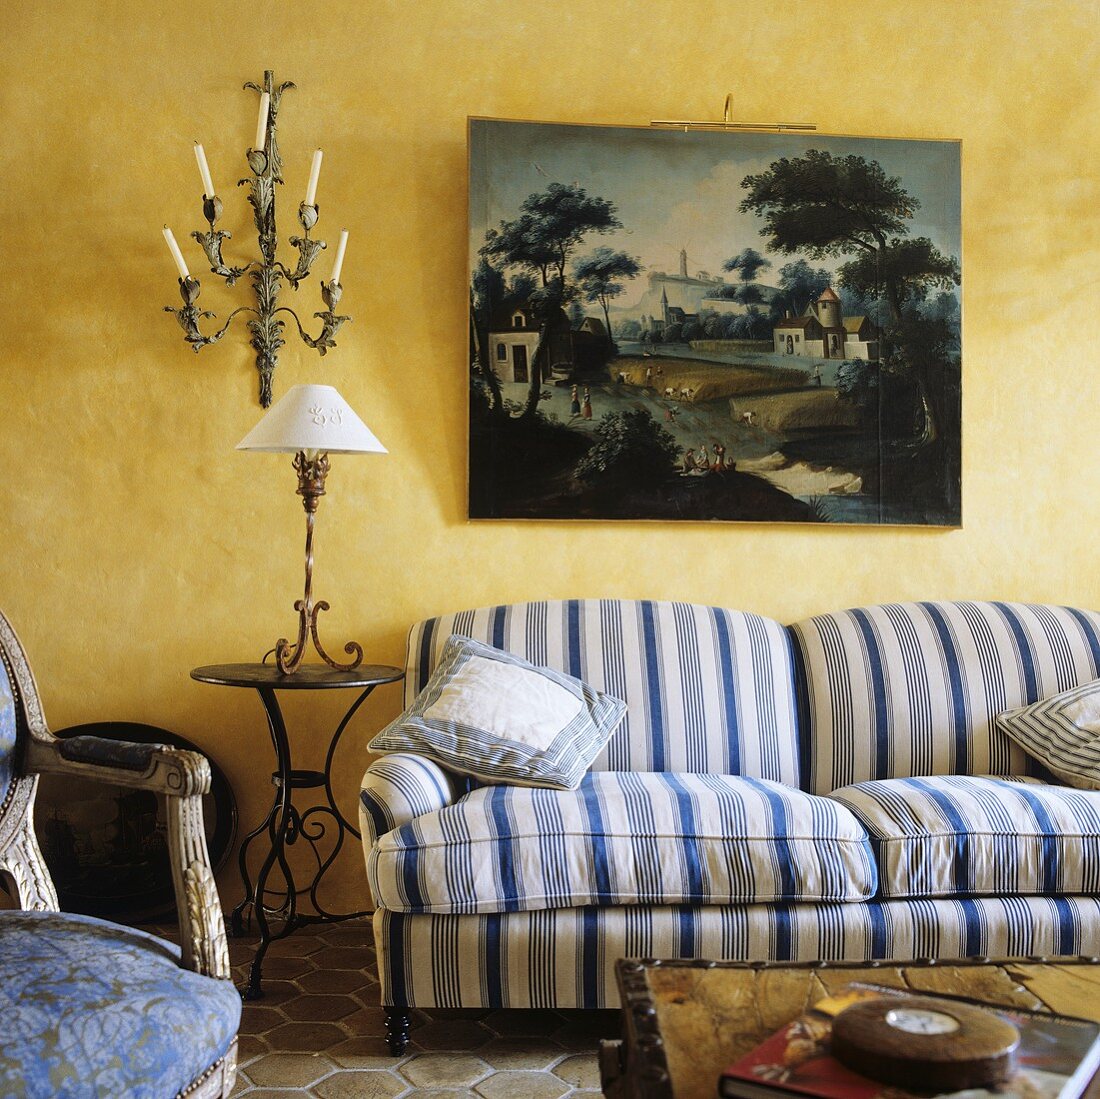 Weiß-blau gestreiftes Polstersofa unter Bild und Beistelltisch mit Tischlampe vor gelber Wand